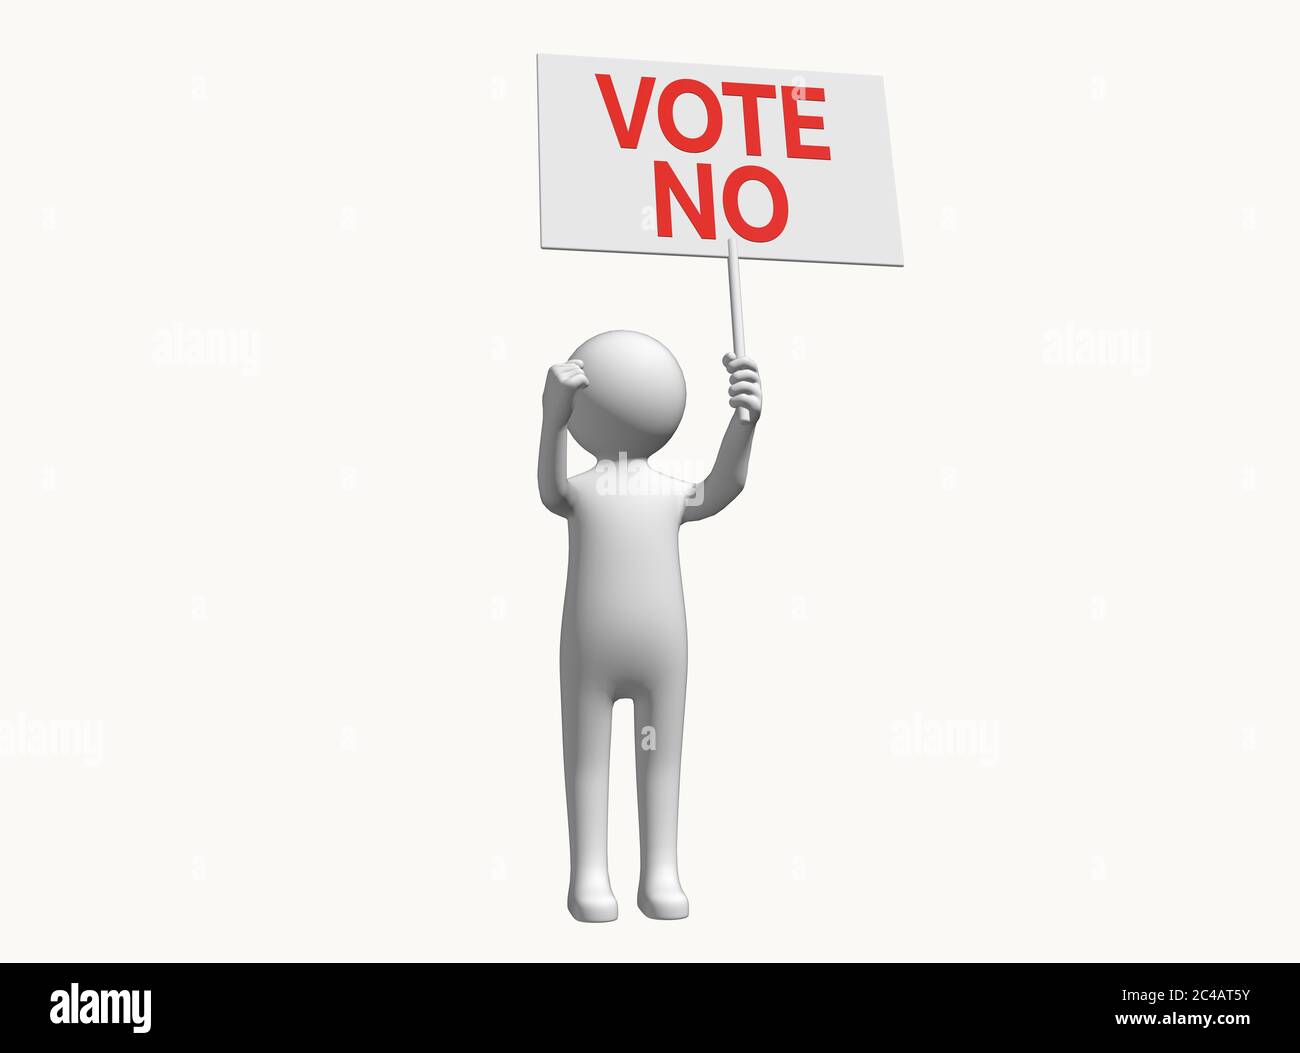 Anonyme personnage 3D bâton homme avec le panneau soutien vote no vote no vote no vote no étiquette choix électoral protestation concept de référendum Banque D'Images